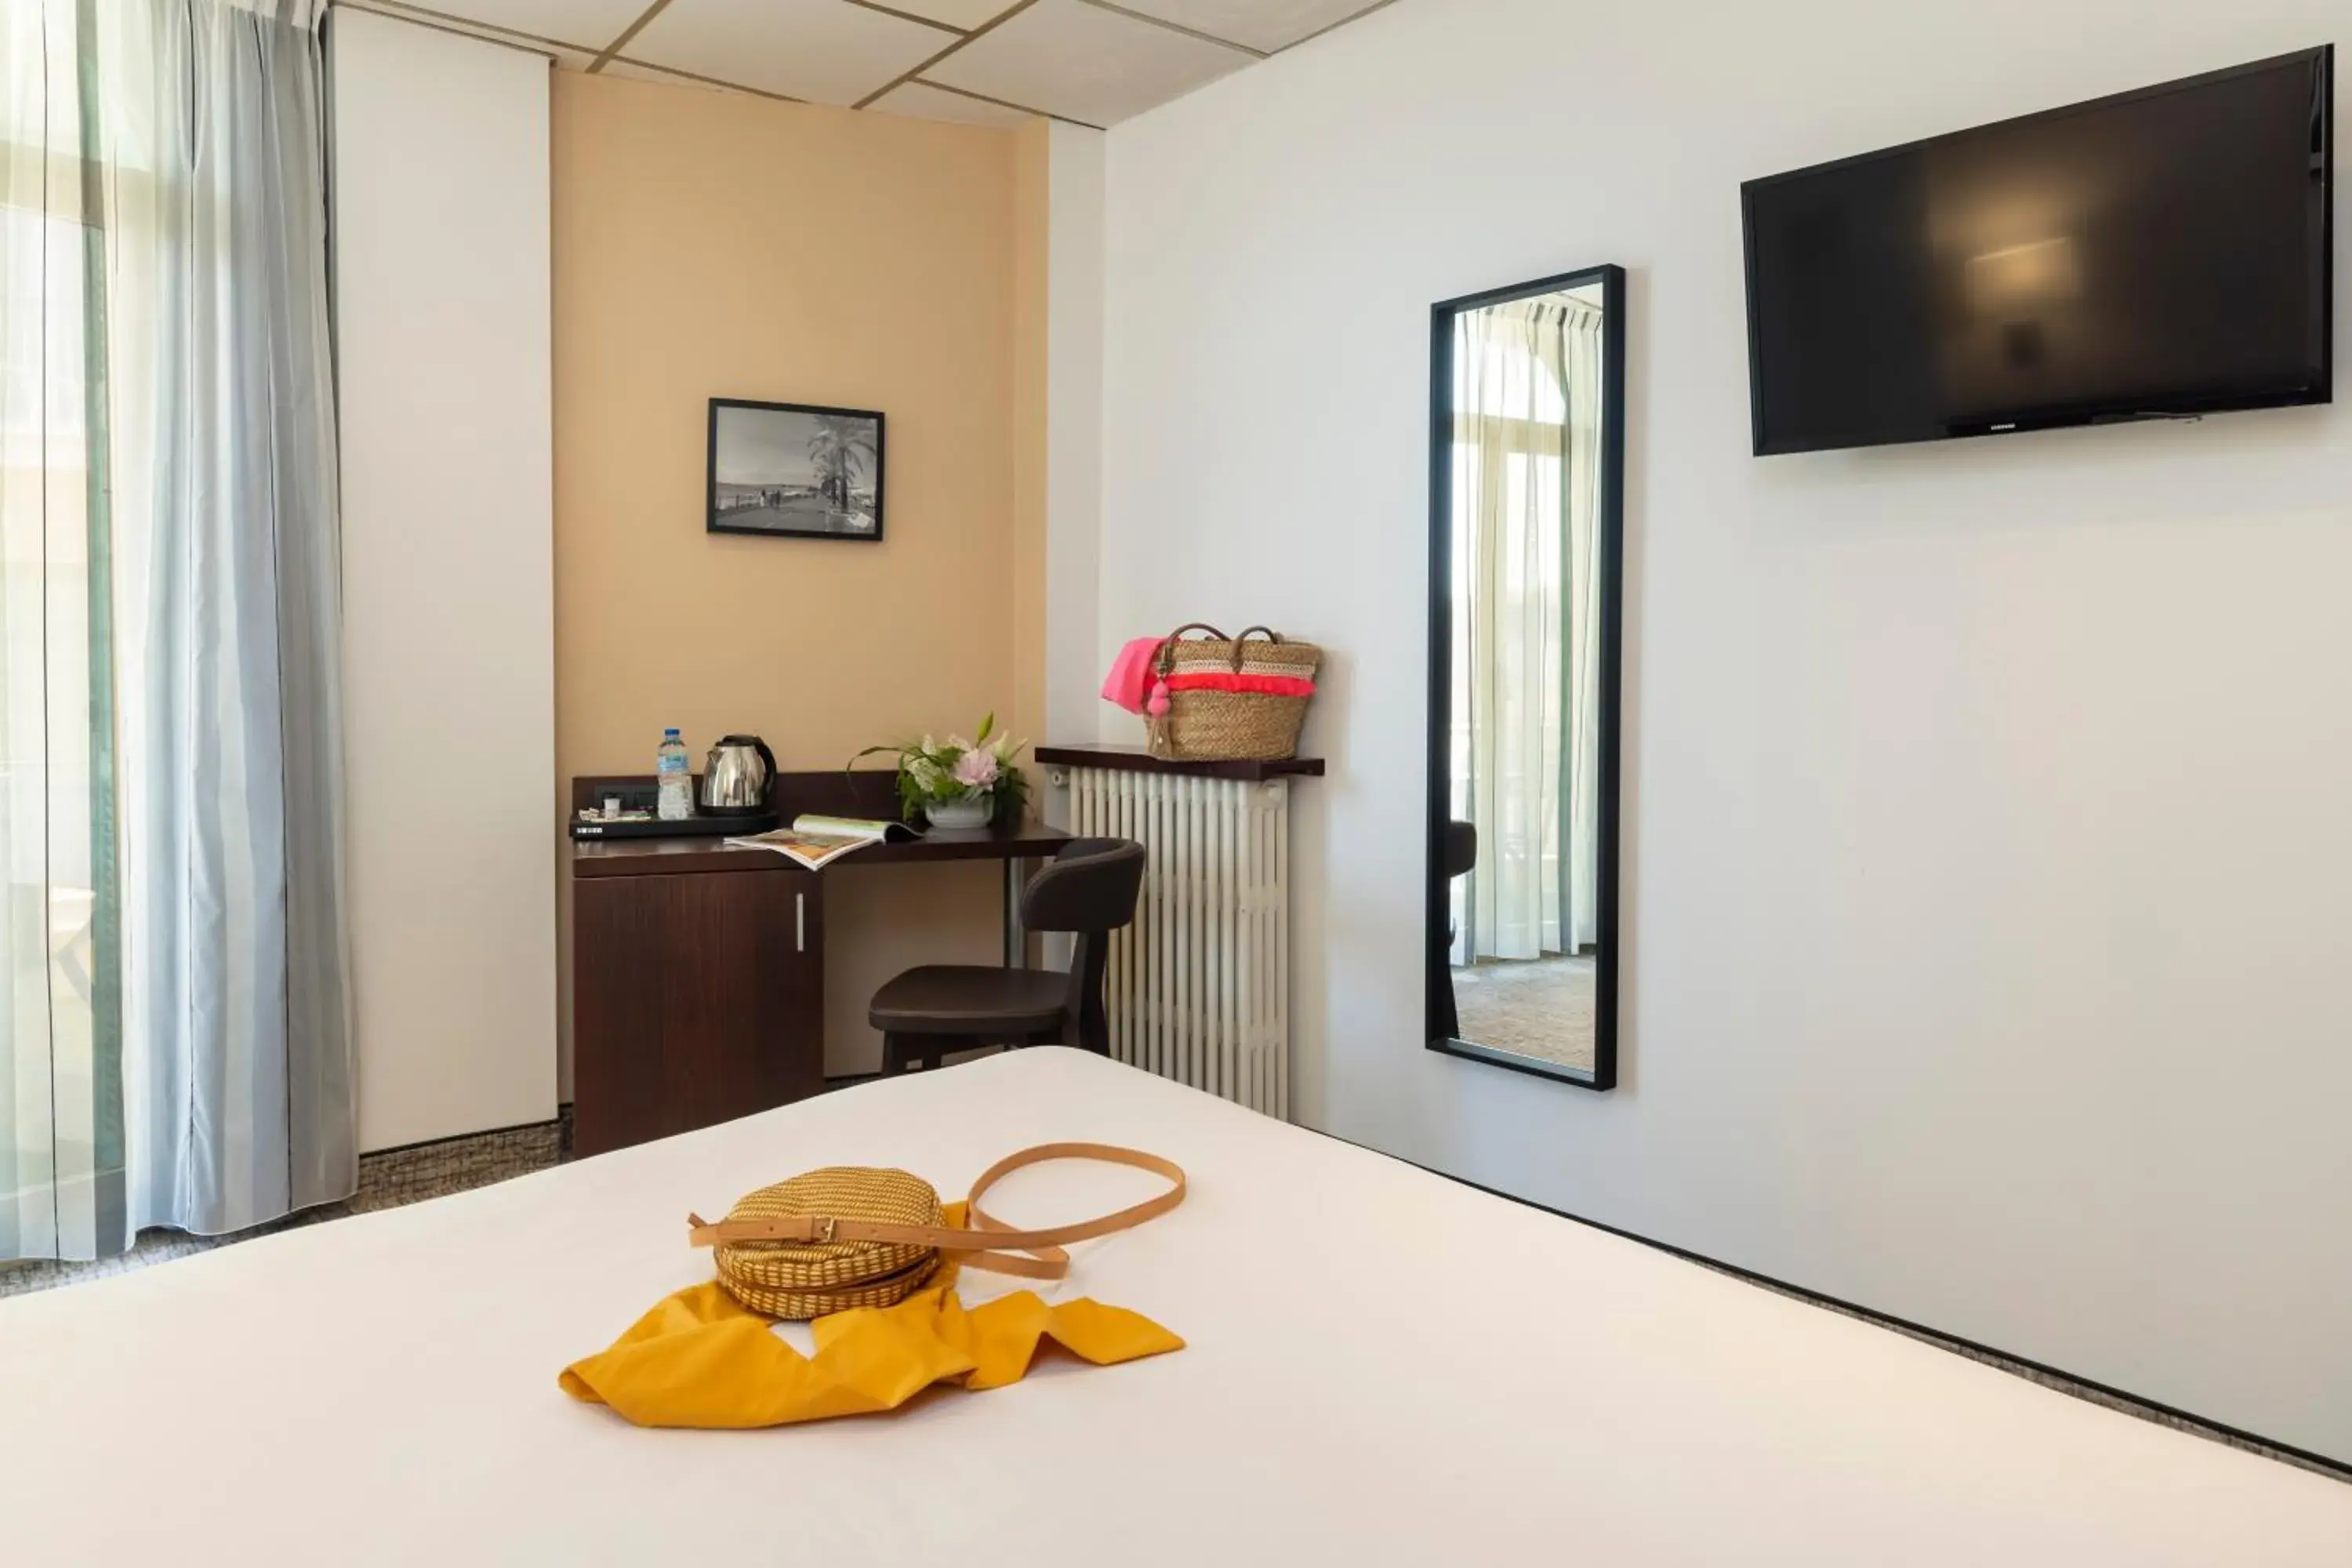 Bedroom, TV/Entertainment Center in Locarno